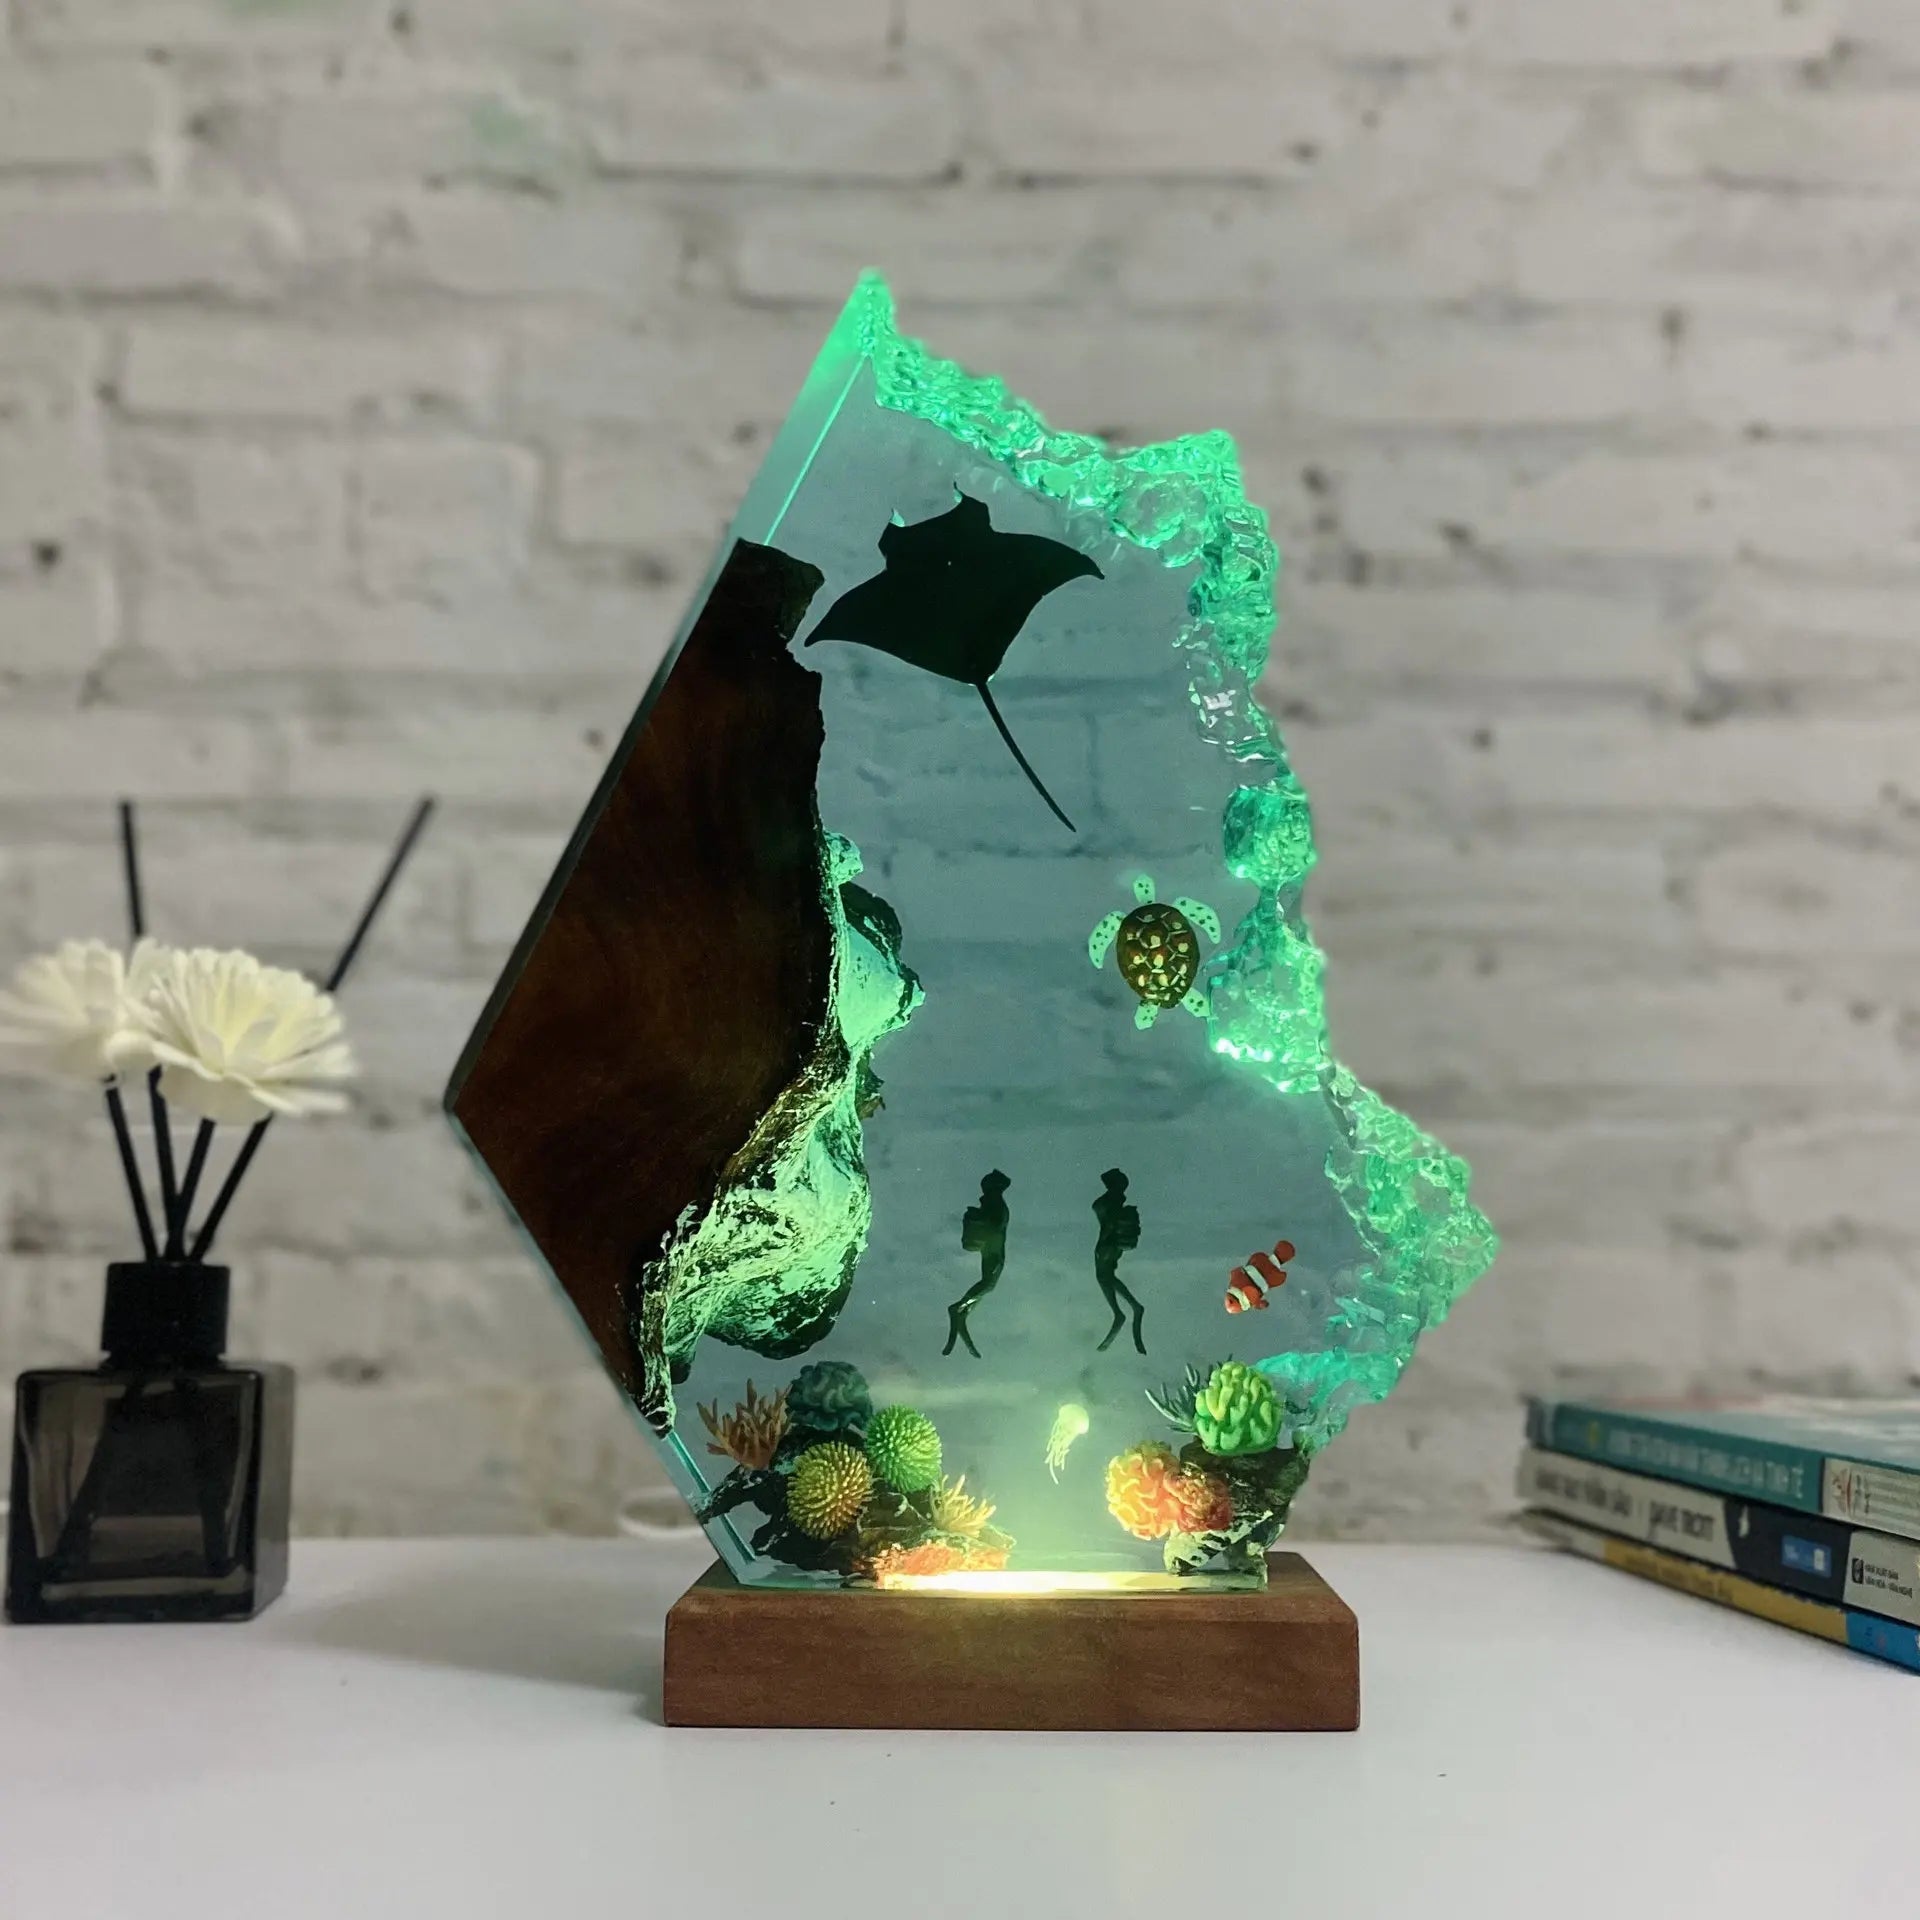 [Lustig] Ozean Manta Strahlen Taucher Meeresschildkröte Nachtlicht LED Light Collection Model Home Decoration Ornamente Kinder Geburtstag Geschenk